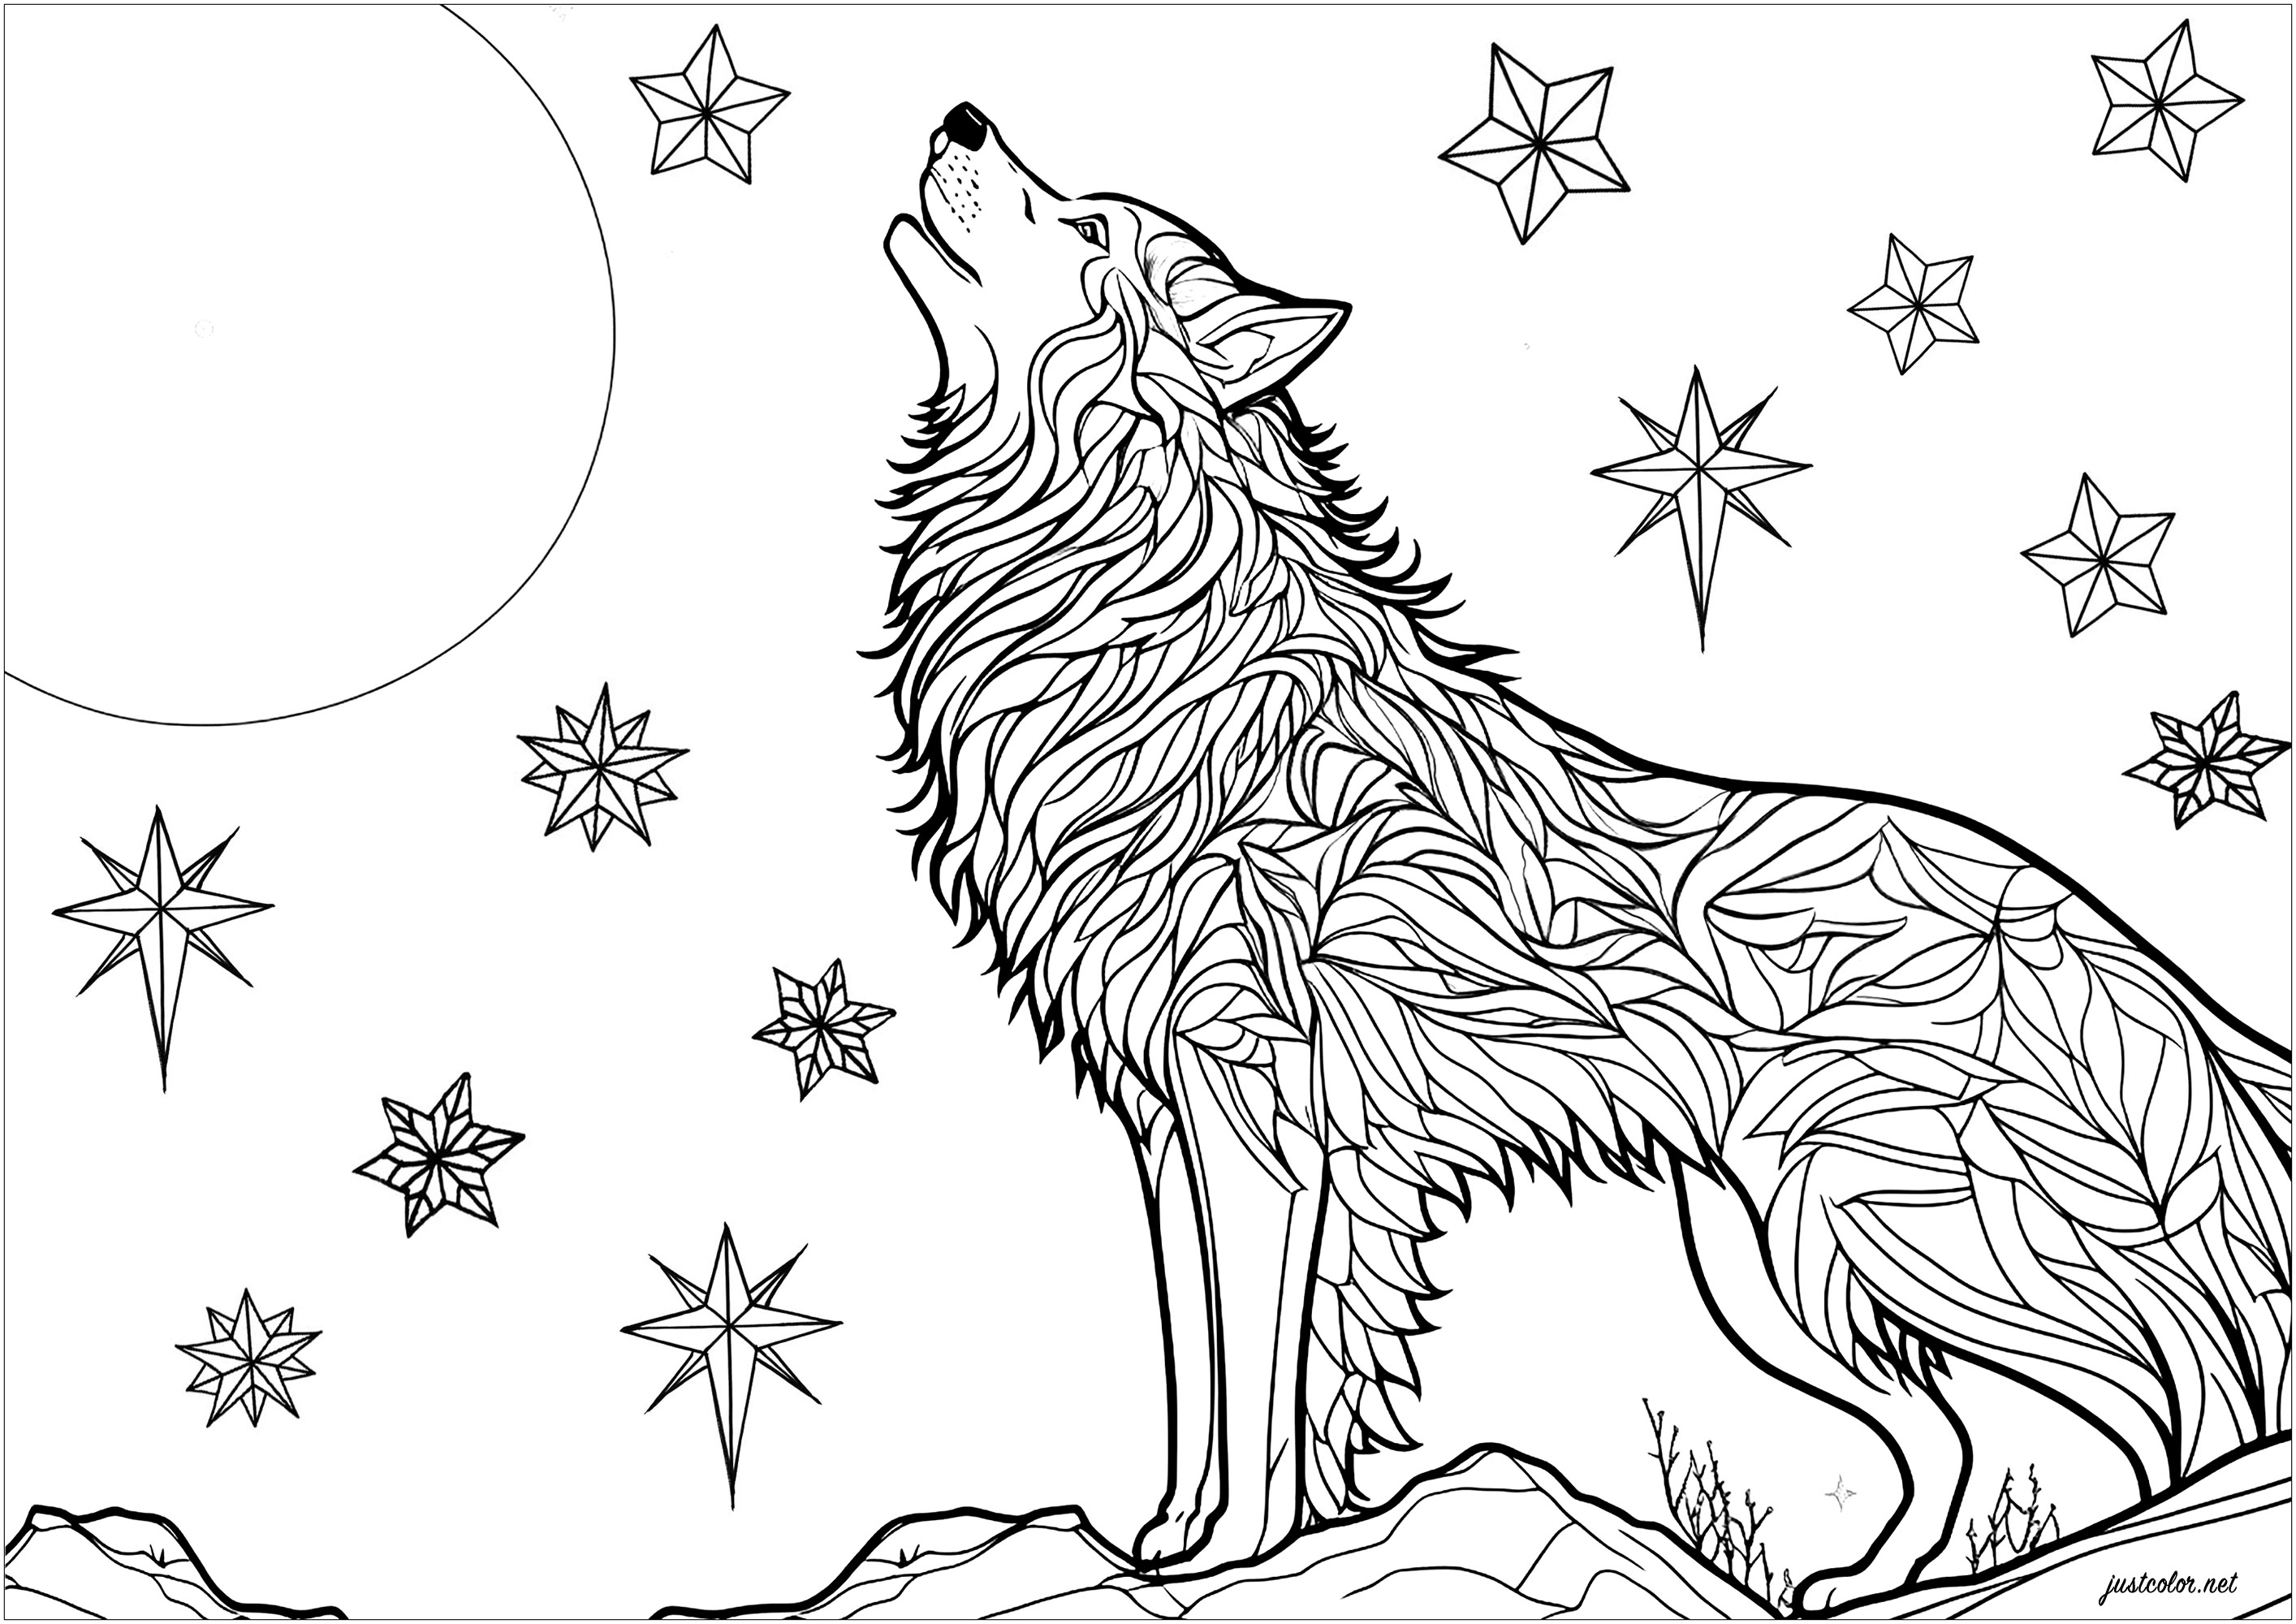 Colorare un lupo che ulula al chiaro di luna. Magnifica scena con un lupo che ulula di notte, appoggiato su una roccia. Nel cielo notturno si intravedono stelle scintillanti. I disegni della pelliccia del lupo possono essere colorati in modo indipendente, per un risultato pieno di mistero e magia.